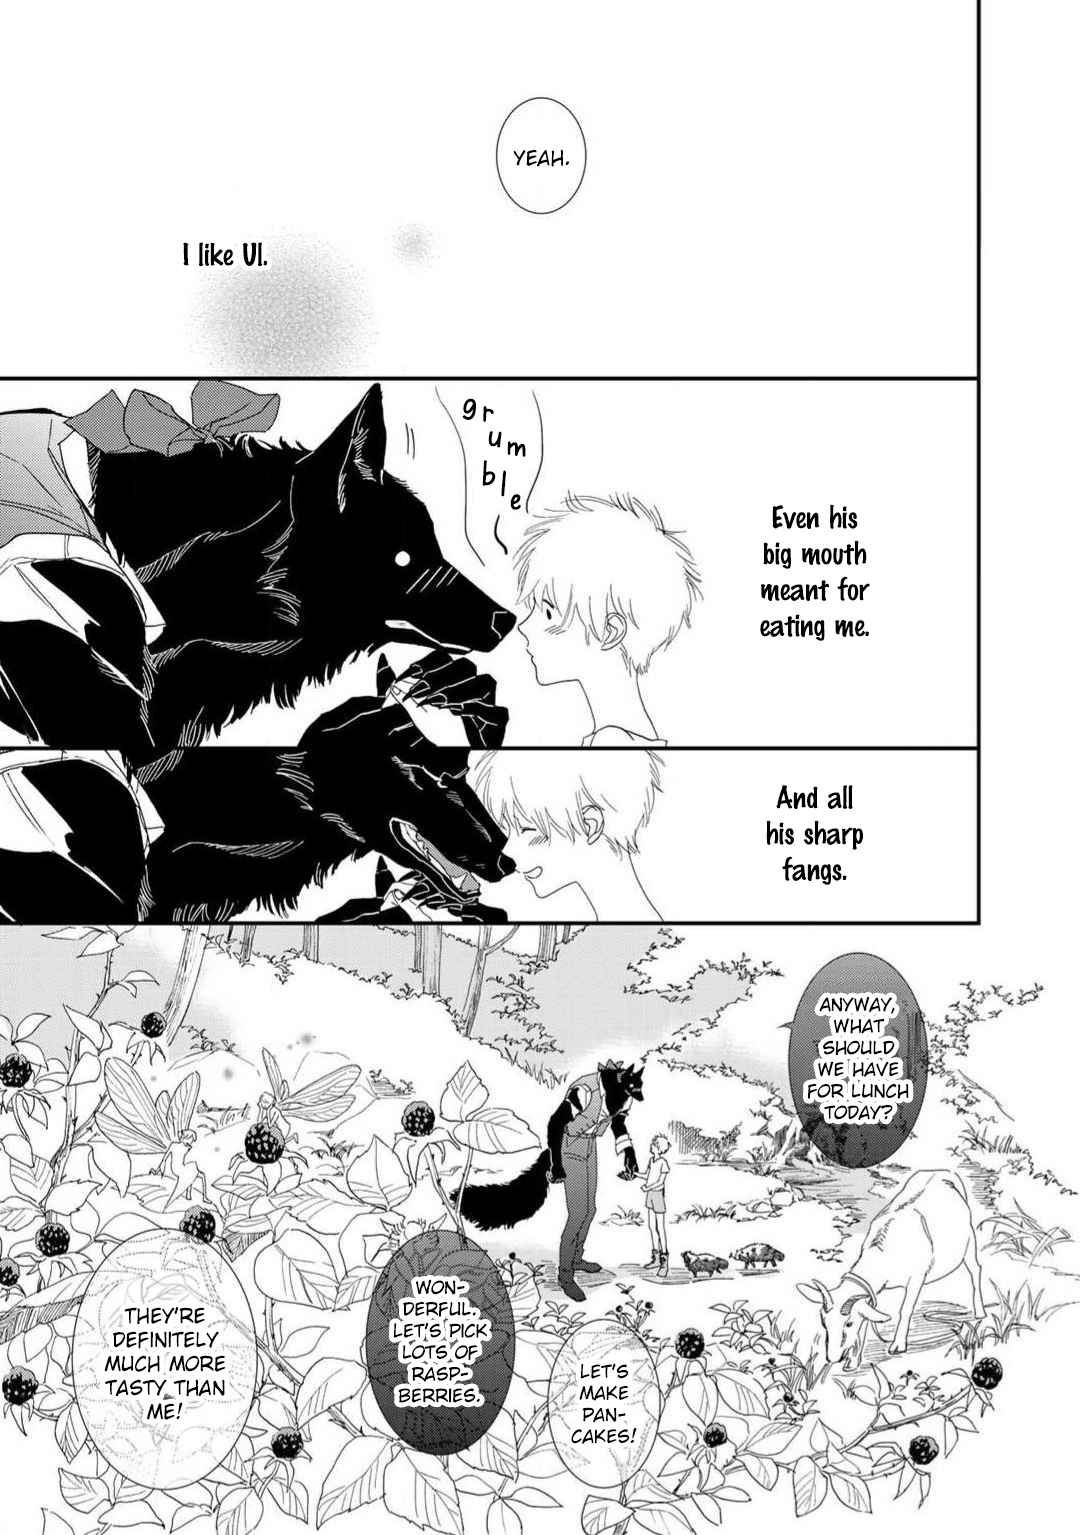 Tabenai No? Ookami san Vol. 1 Ch. 1 The Wolfman and the Boy